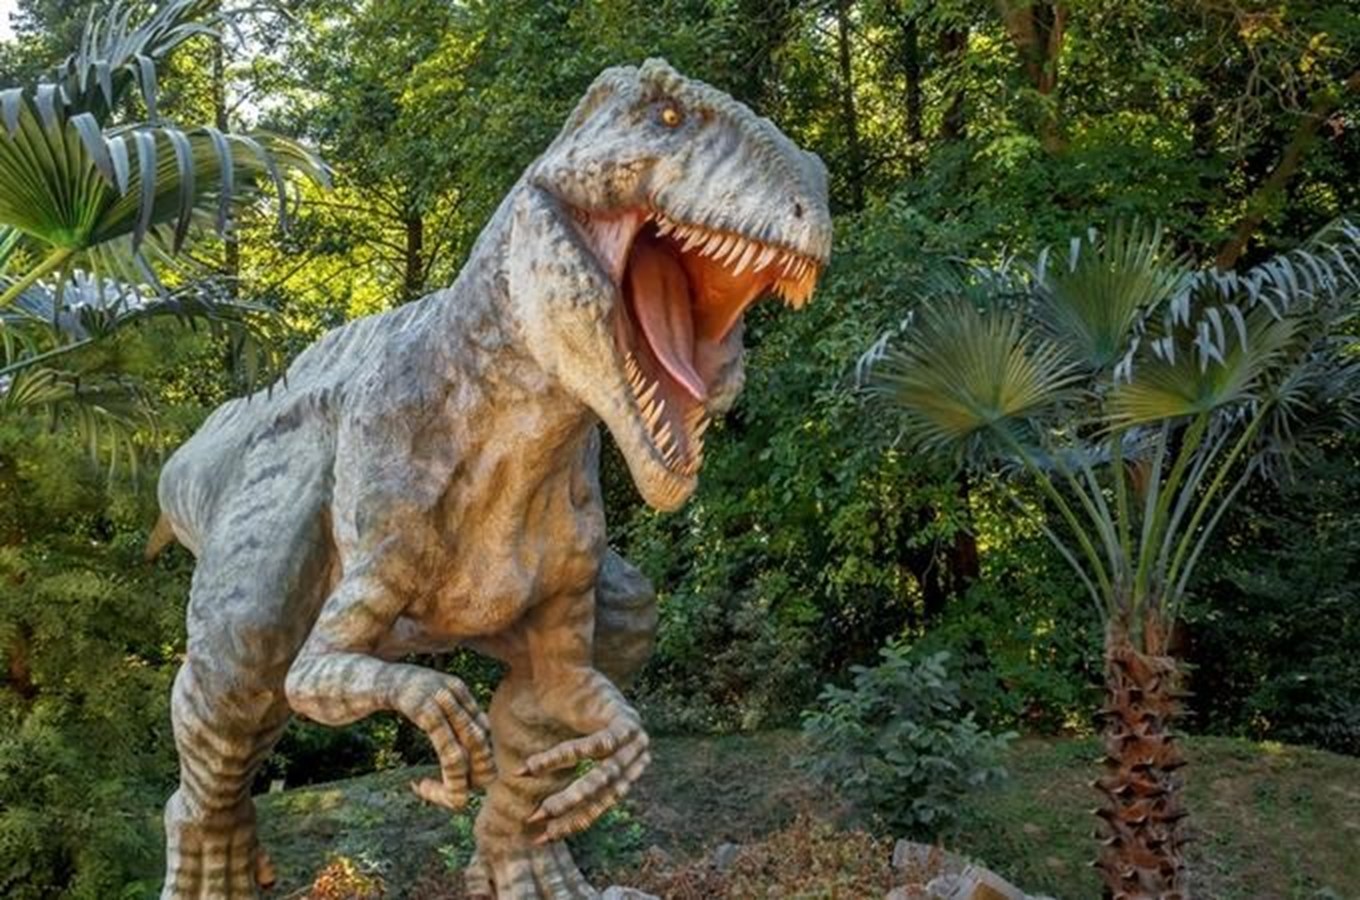 Inspirace, kam kam vzít děti na výlet za dinosaury a prehistorií